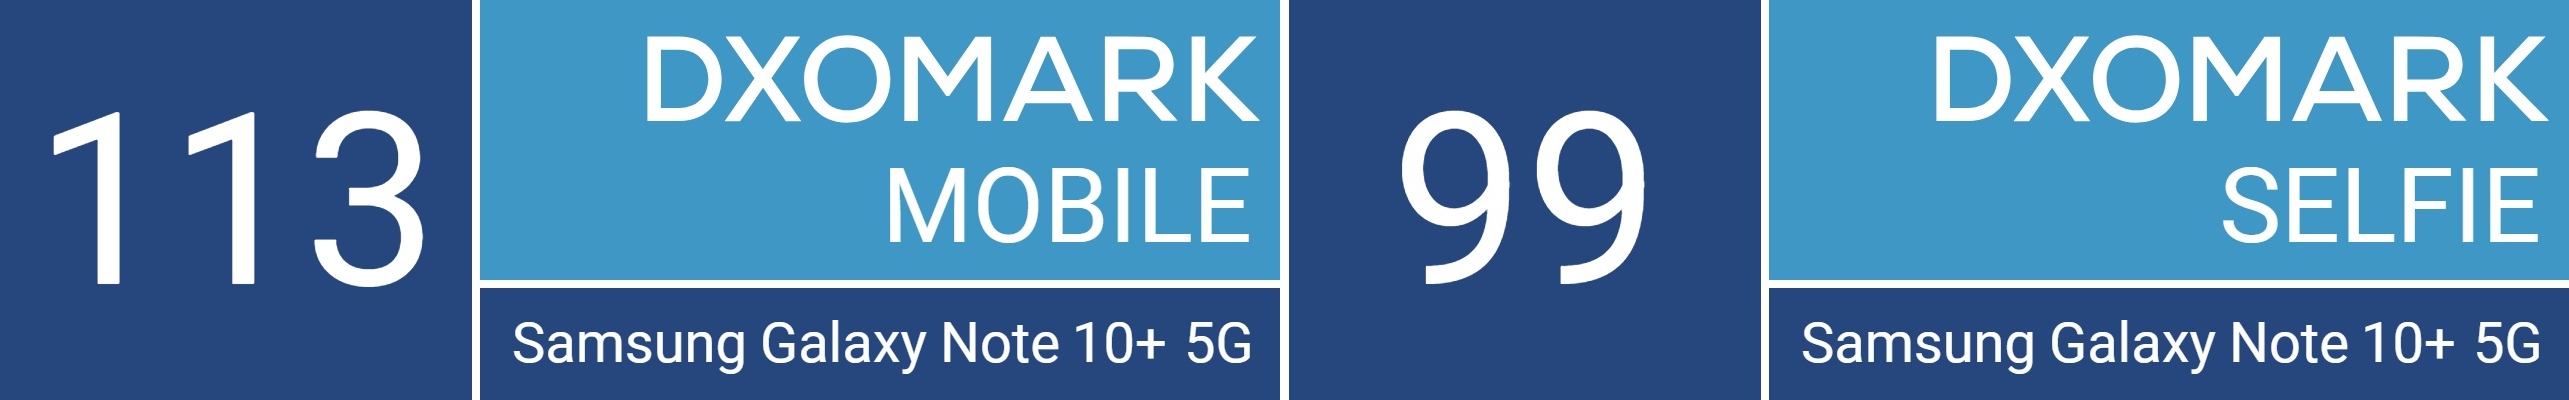 هاتف Note10+ 5G يحقق المركز الأول في تصنيف موقع DxOMark لجودة الصور والفيديوهات 